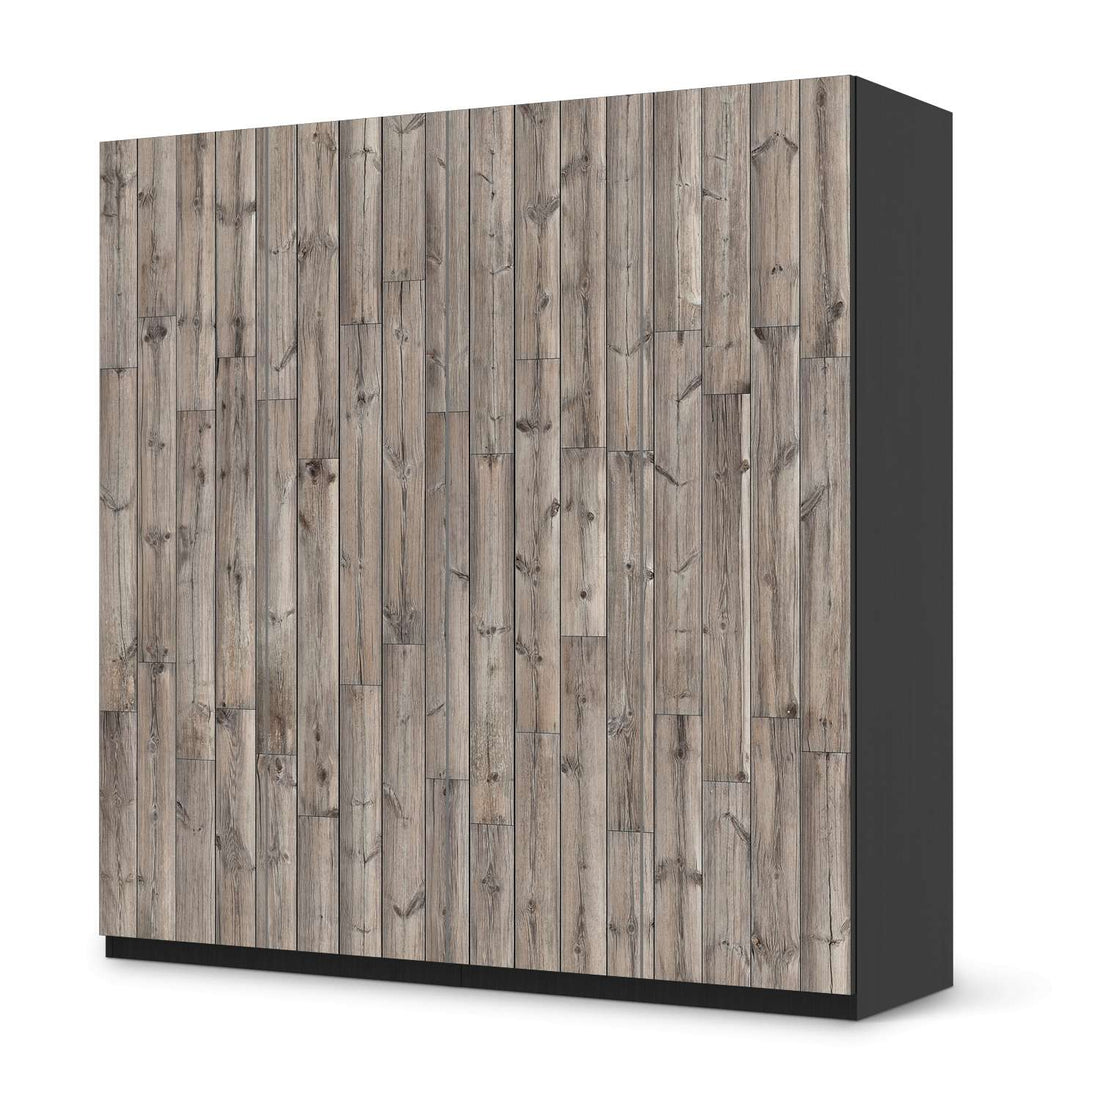 Klebefolie für Schränke Dark washed - IKEA Pax Schrank 201 cm Höhe - 4 Türen - schwarz